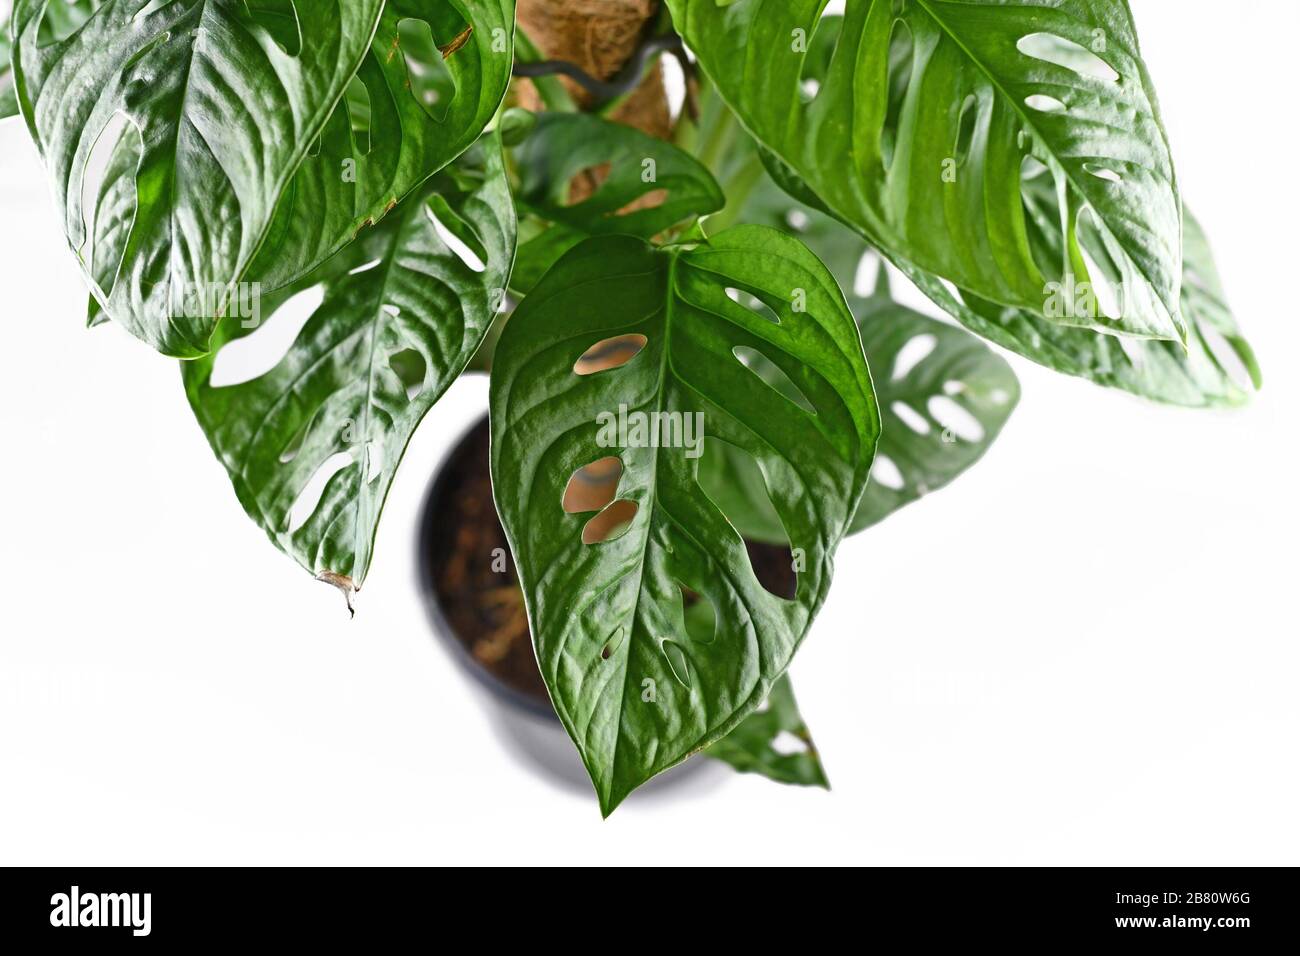 Gros plan de feuilles avec des trous de la plante tropicale de maison de vigne 'Monstera Adansonii' ou 'Monkey Mask' sur fond blanc Banque D'Images